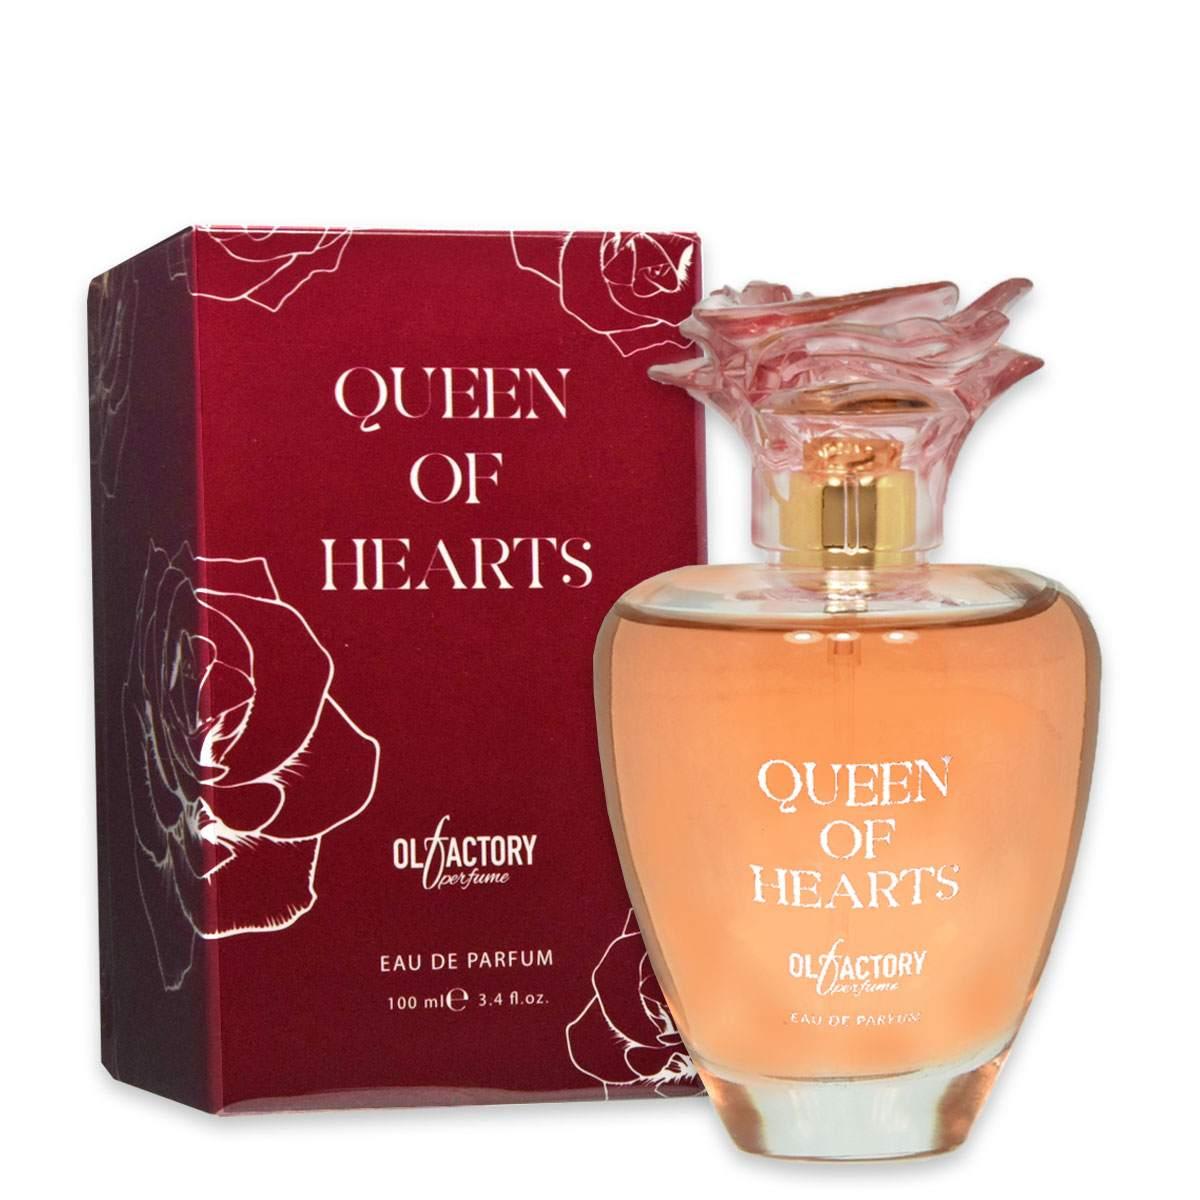 Queen of Hearts Edp 100 ml